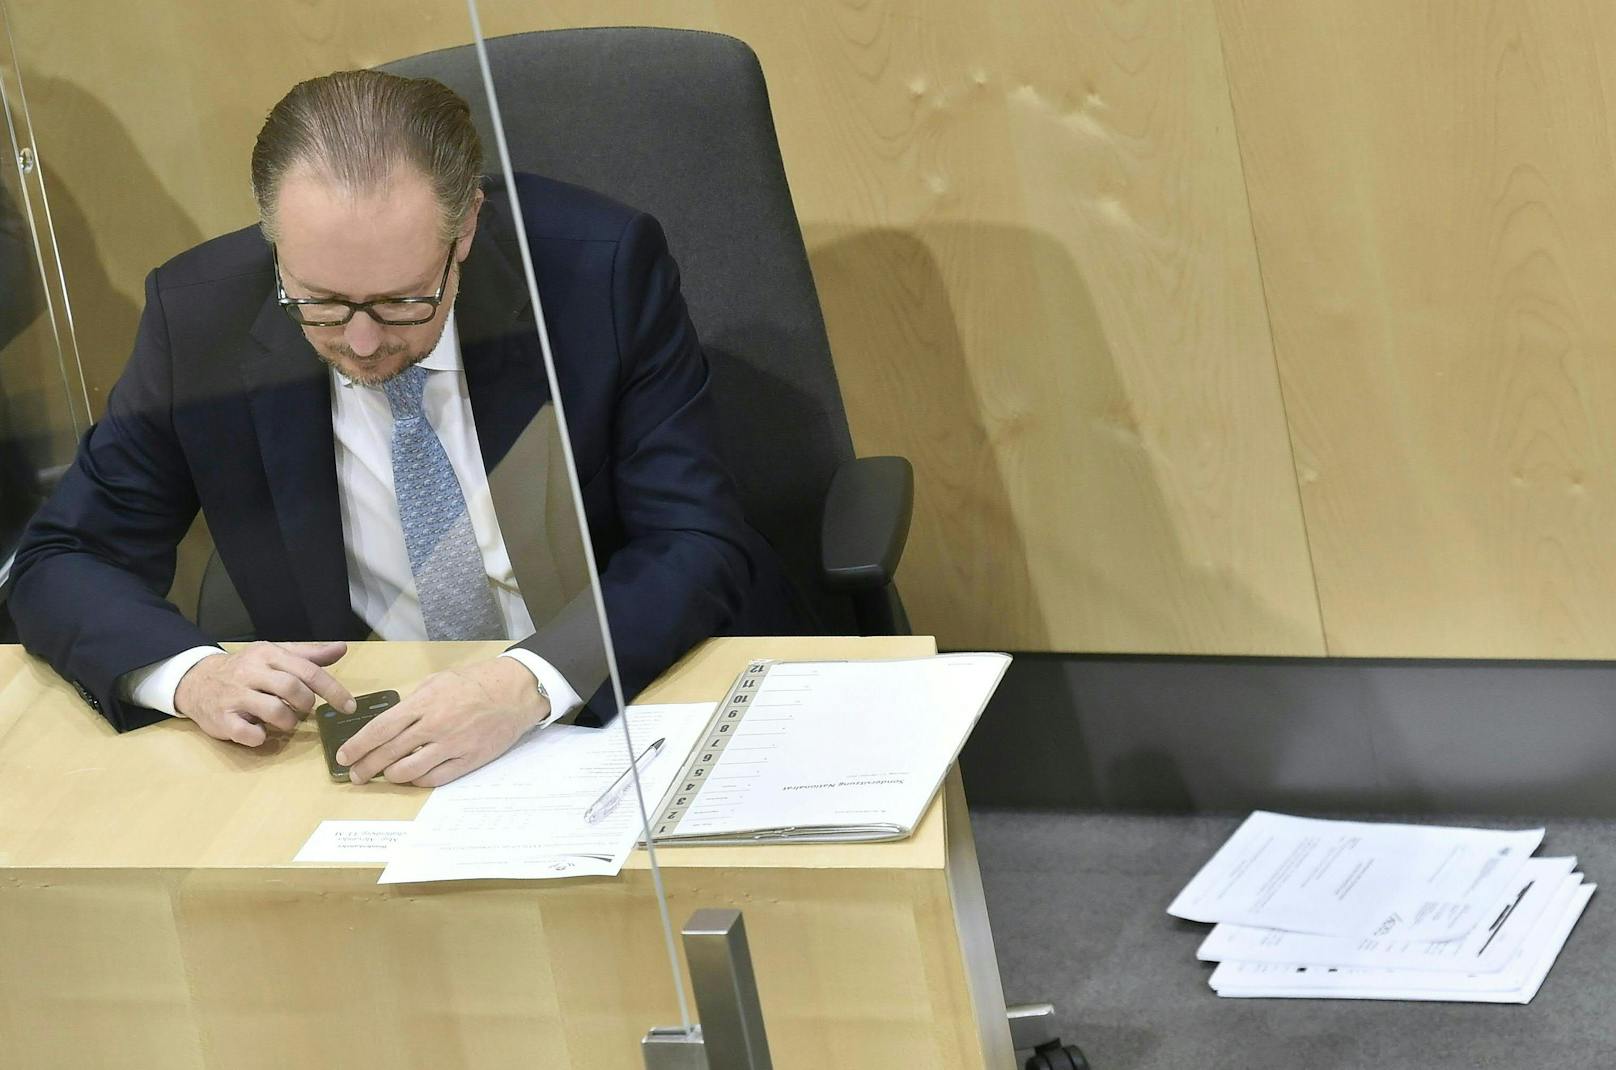 Bundeskanzler Alexander Schallenberg widmete sich seinem Handy statt den Akten.